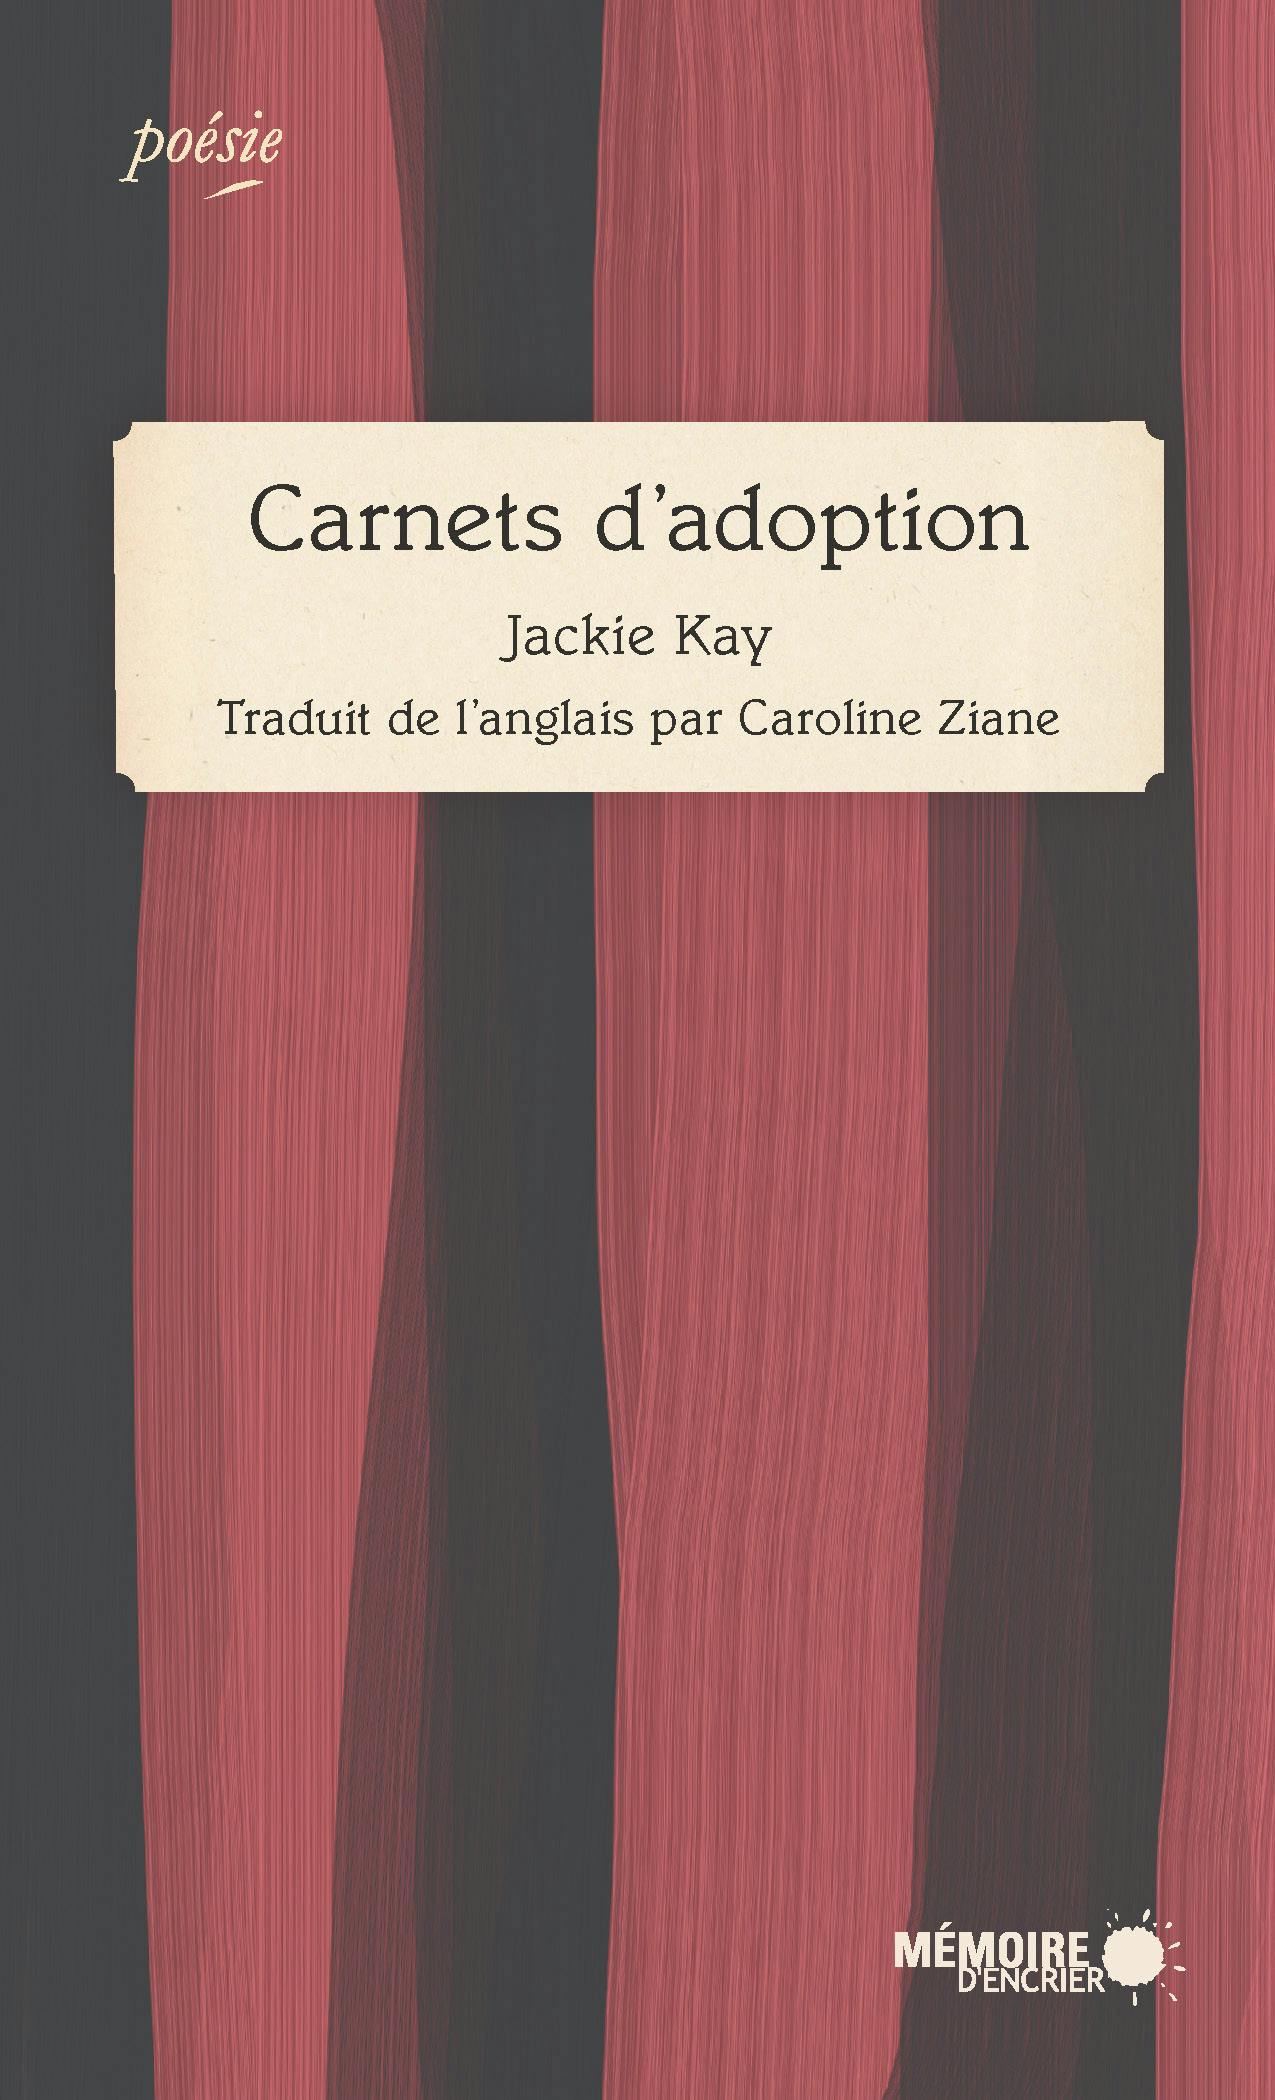 Carnets d’adoption | Jackie Kay